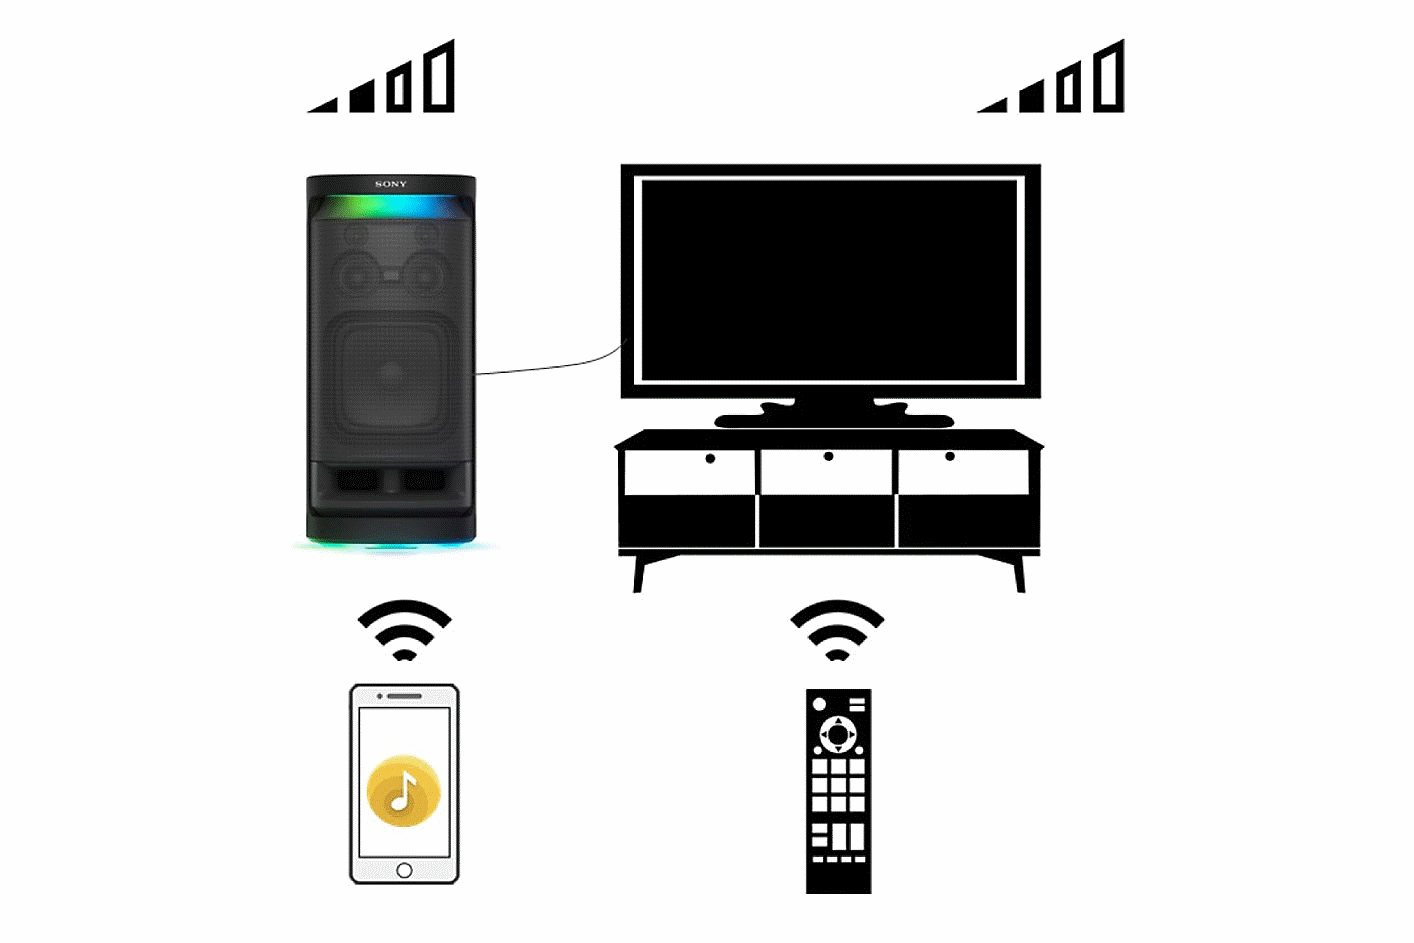 Изображение с инструкциями по активации передачи звука между беспроводной колонкой SRS-XV900 и телевизором